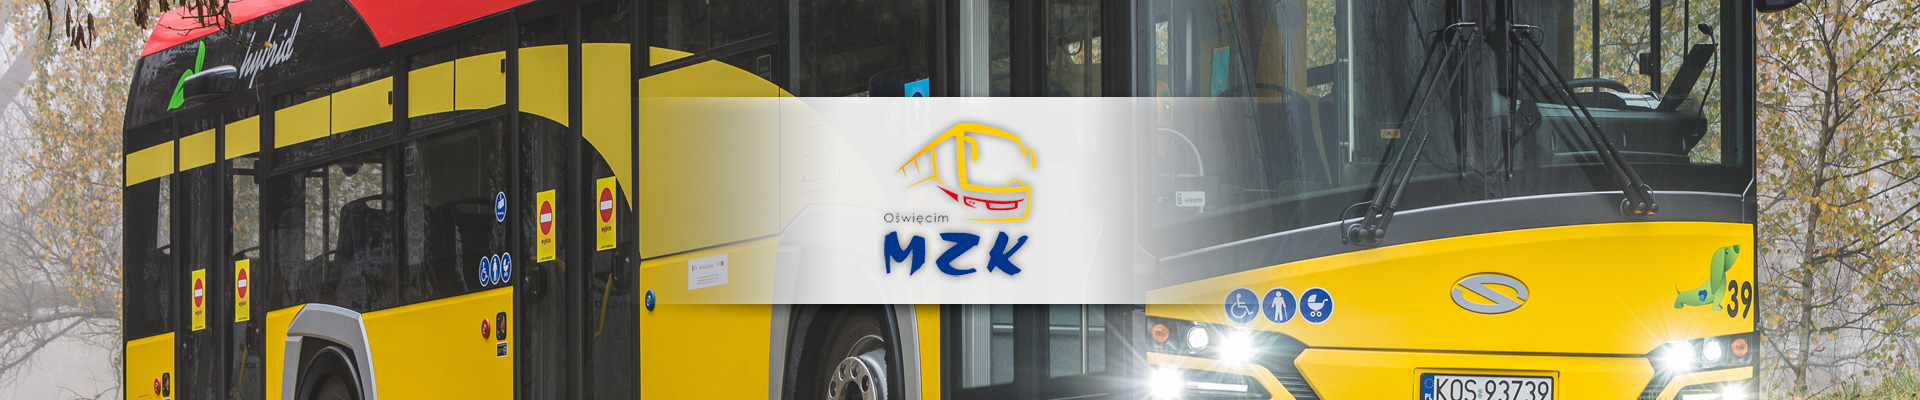 MZK Oświęcim Logo